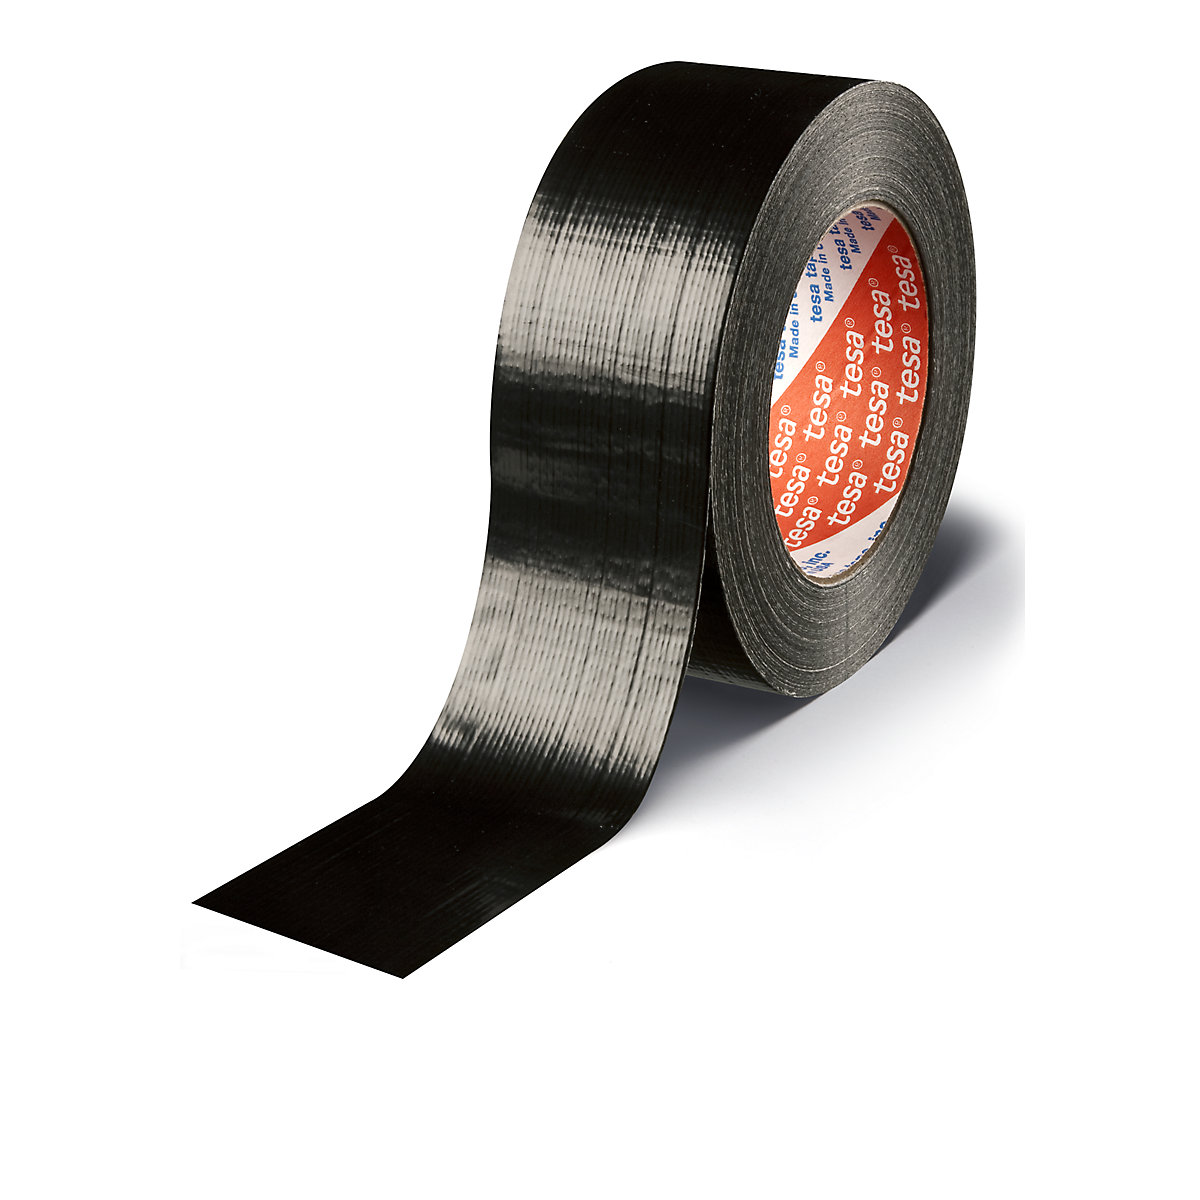 Tkaninová páska – tesa, tkaninová páska tesa® 4613 Standard, bal.j. 48 rolí, černá, šířka pásky 48 mm-6